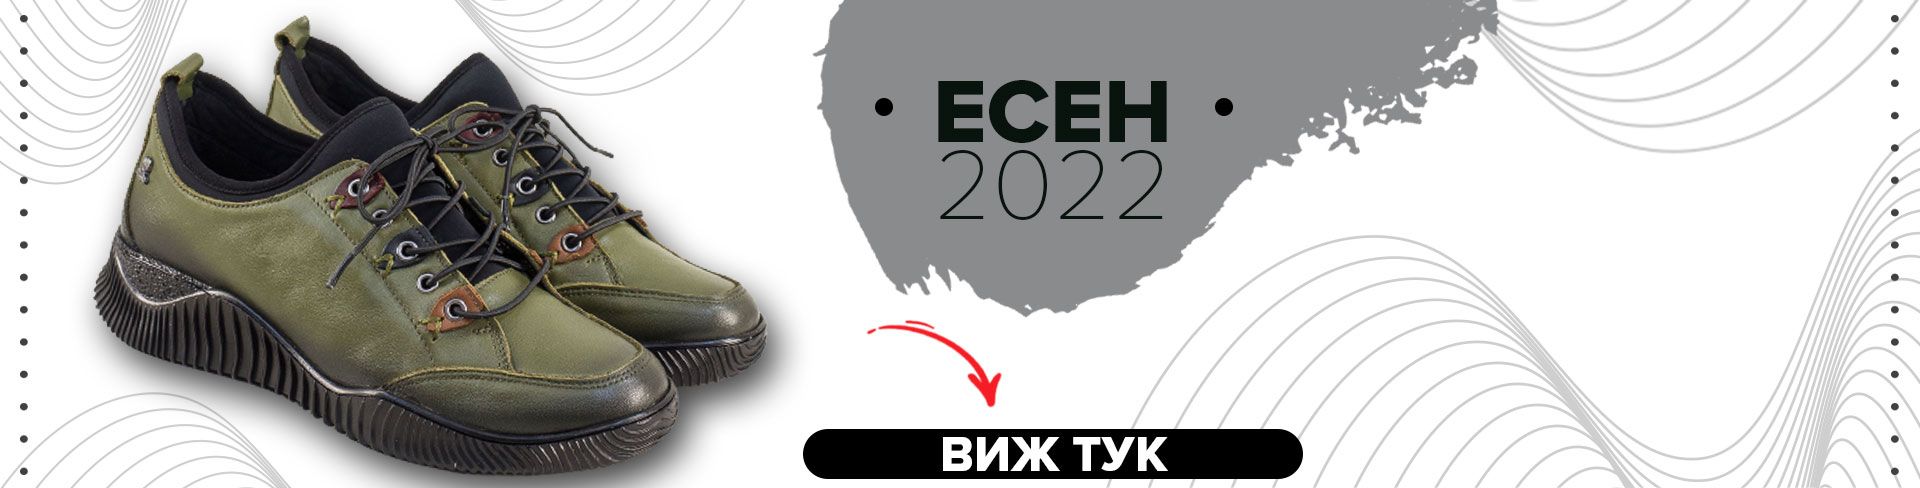 НОВА КОЛЕКЦИЯ - ЕСЕН 2022